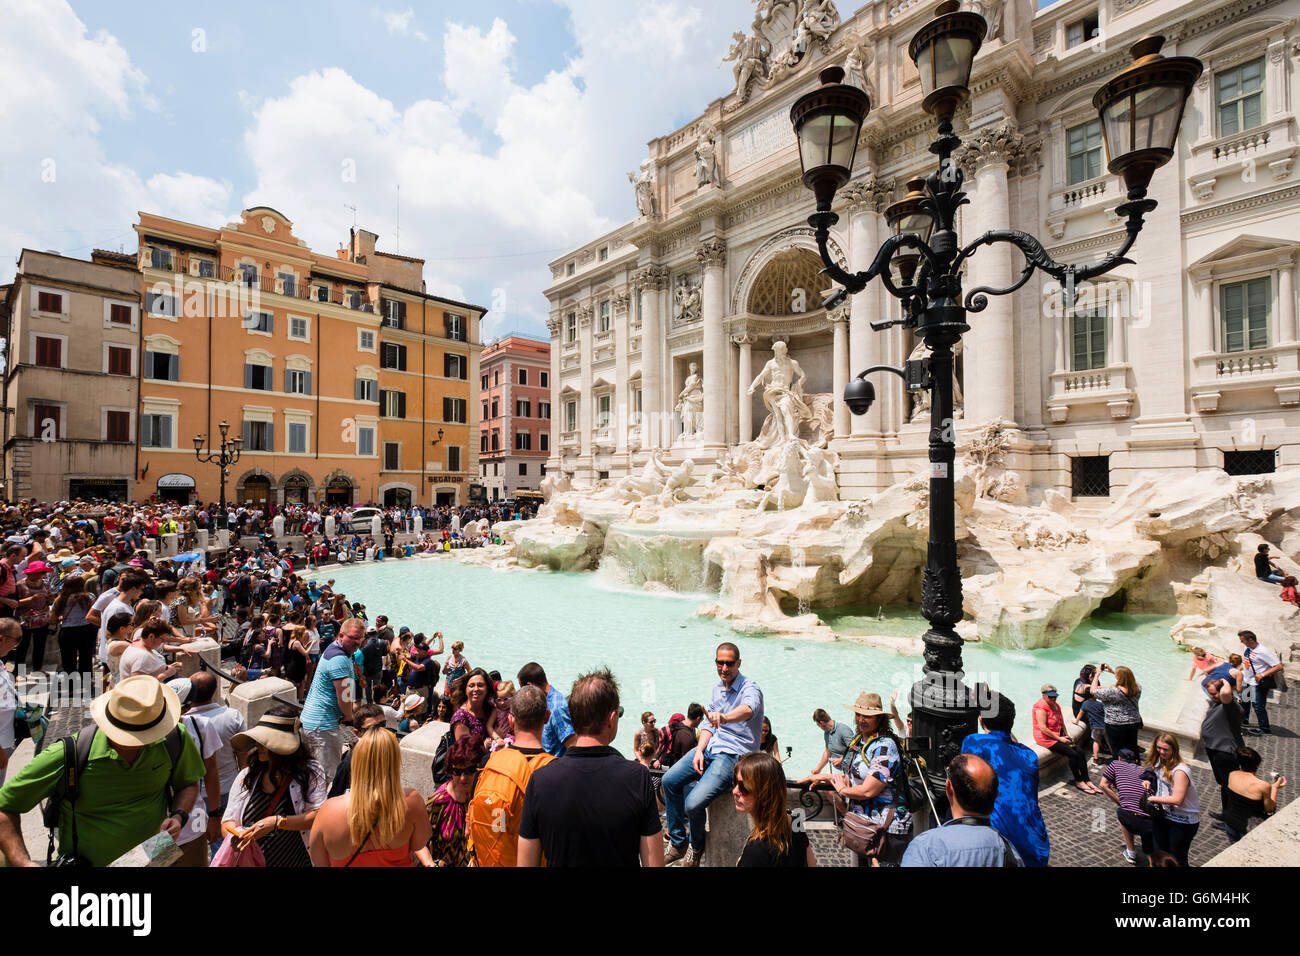 La fontana de Trevi o la Fontana di Trevia con muchos turistas en Roma Italia Foto de stock